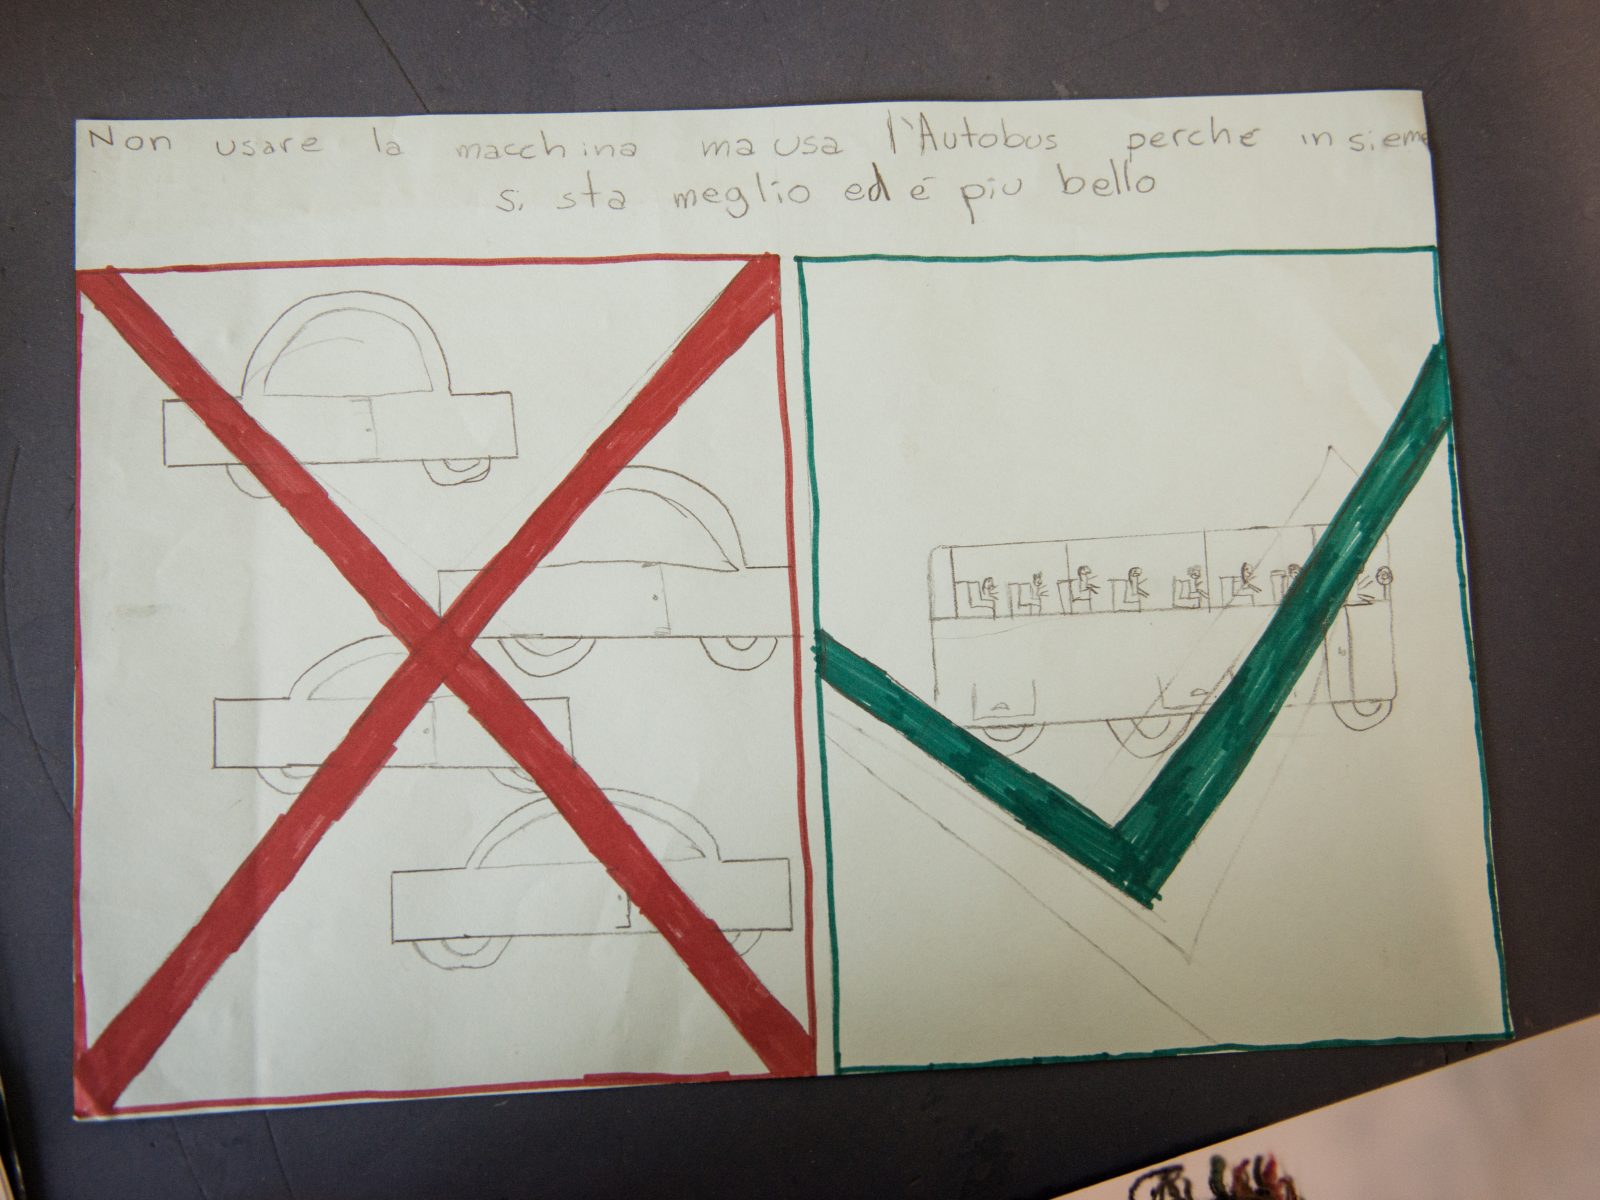 Mit einfachen Mitteln die Umwelt schonen - Zeichnung eines Grundschülers aus San Lugano